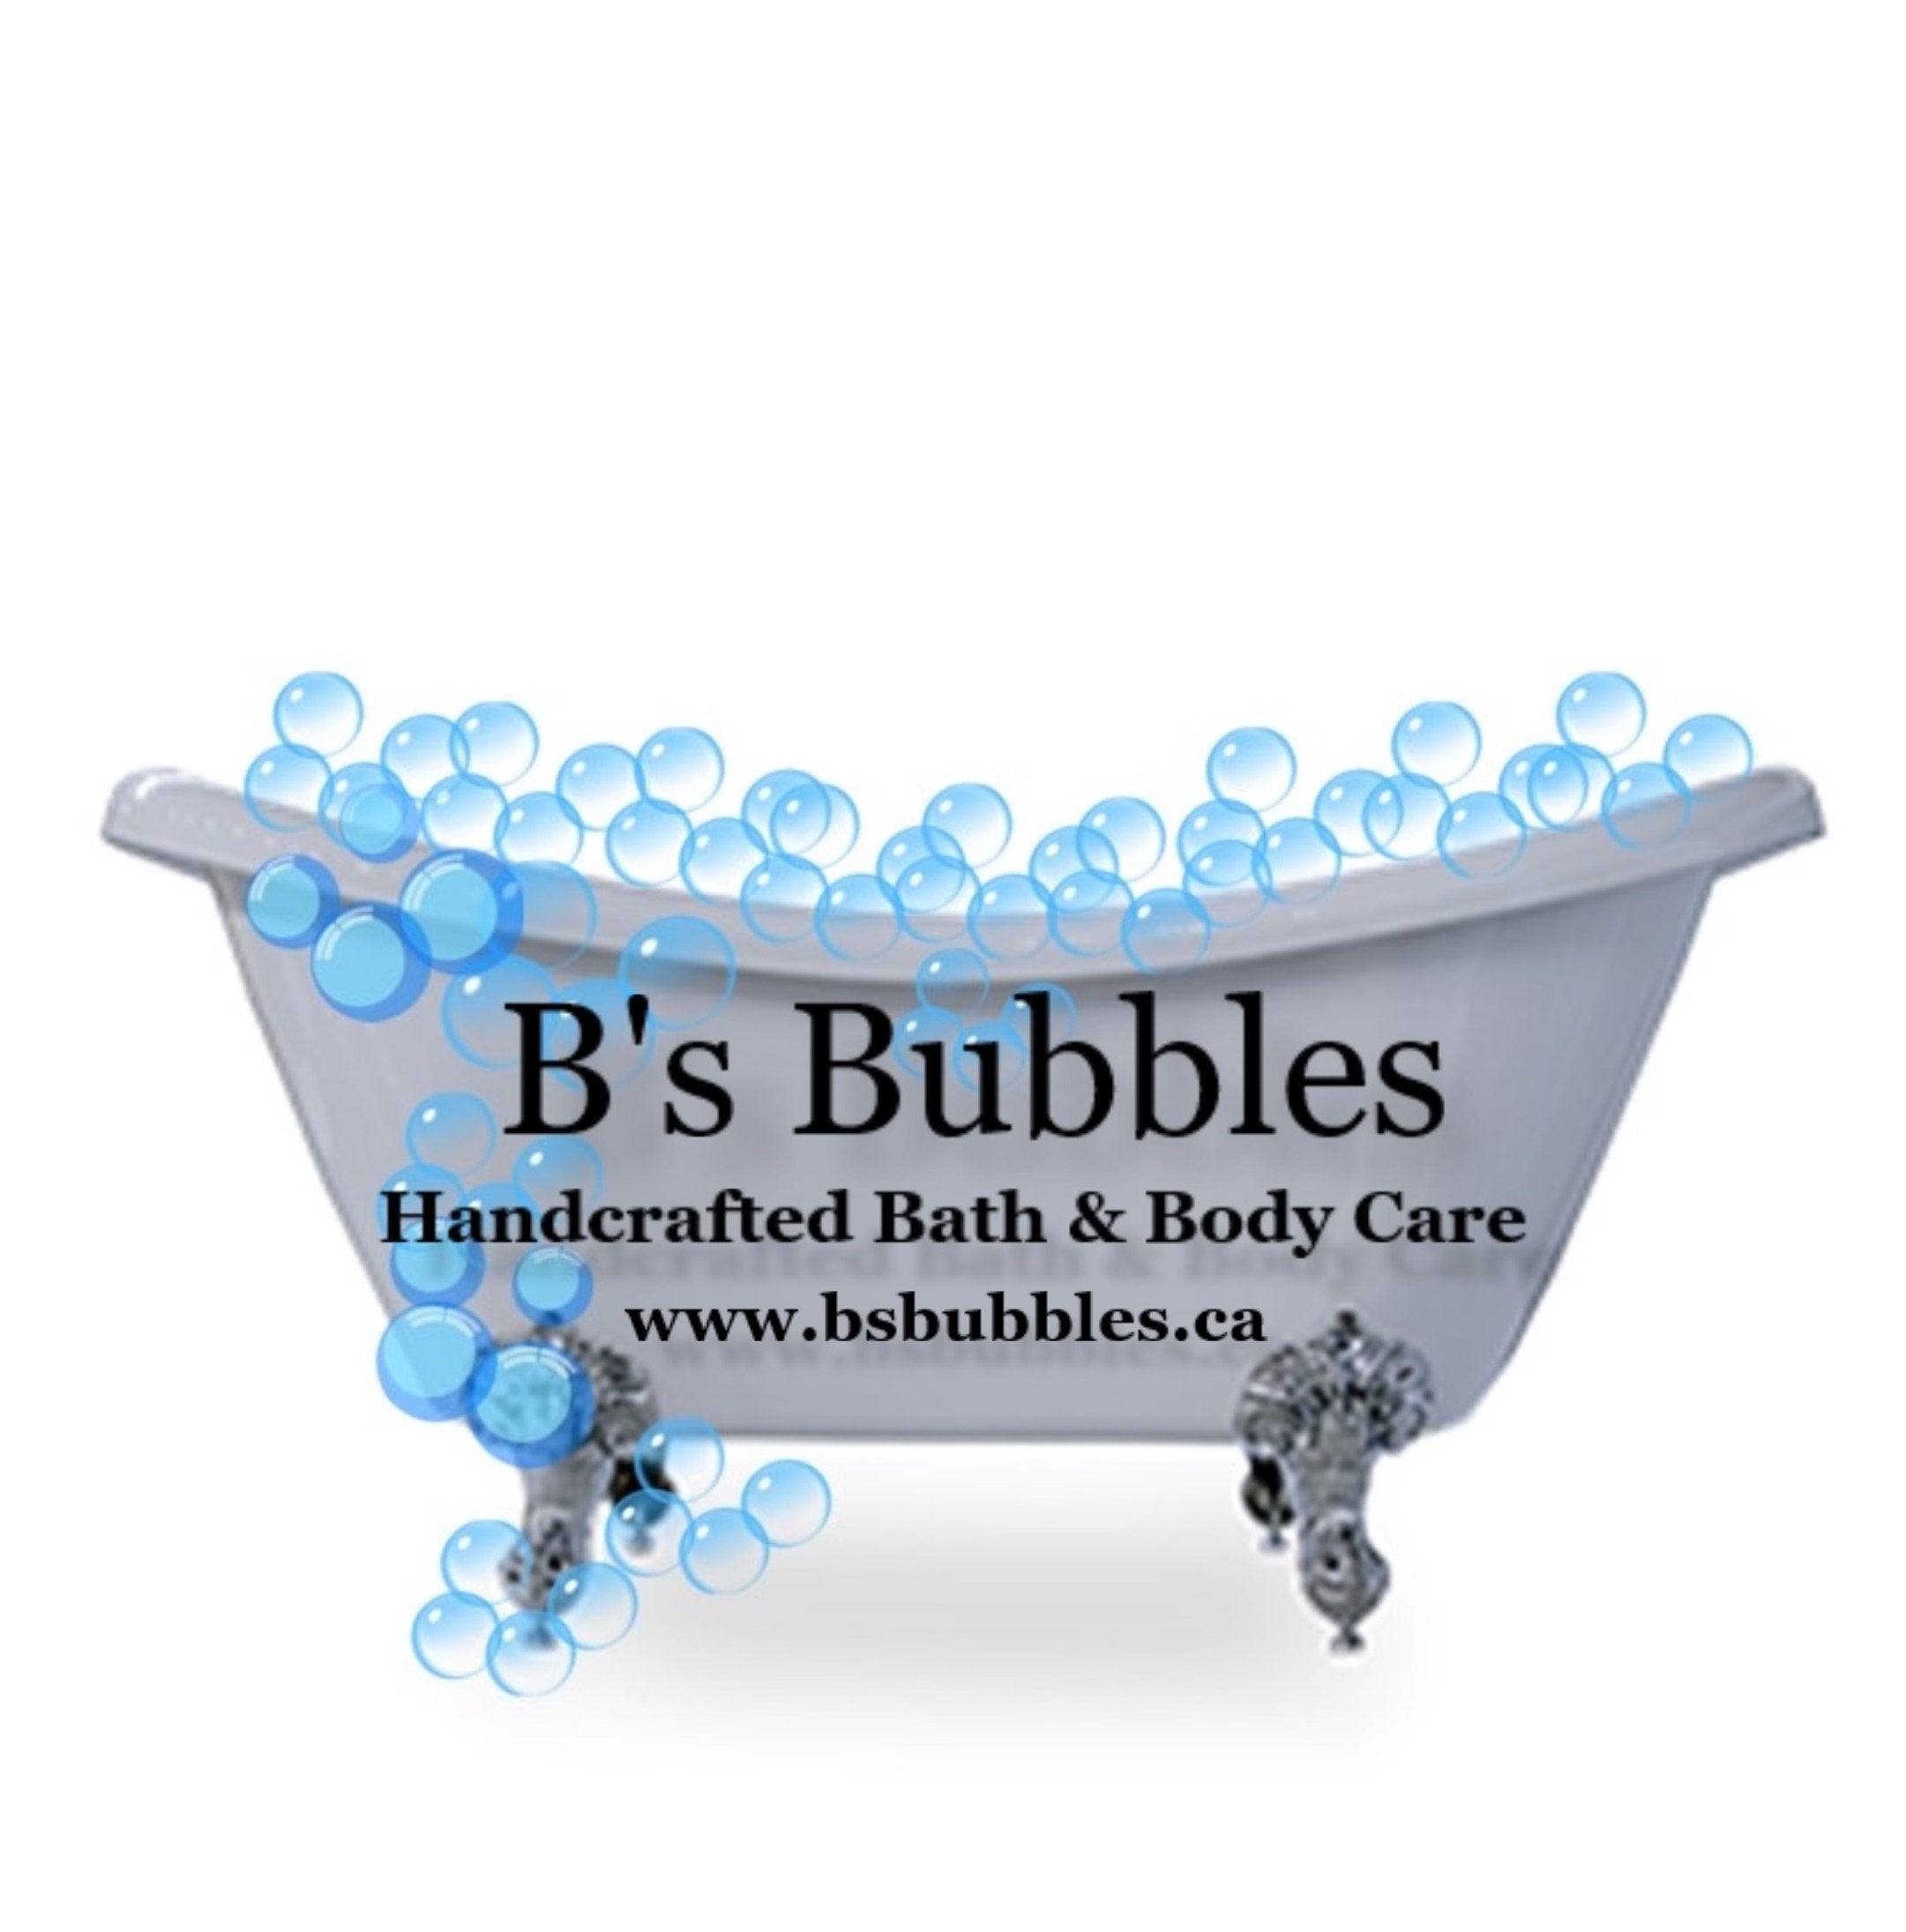 B's Bubbles